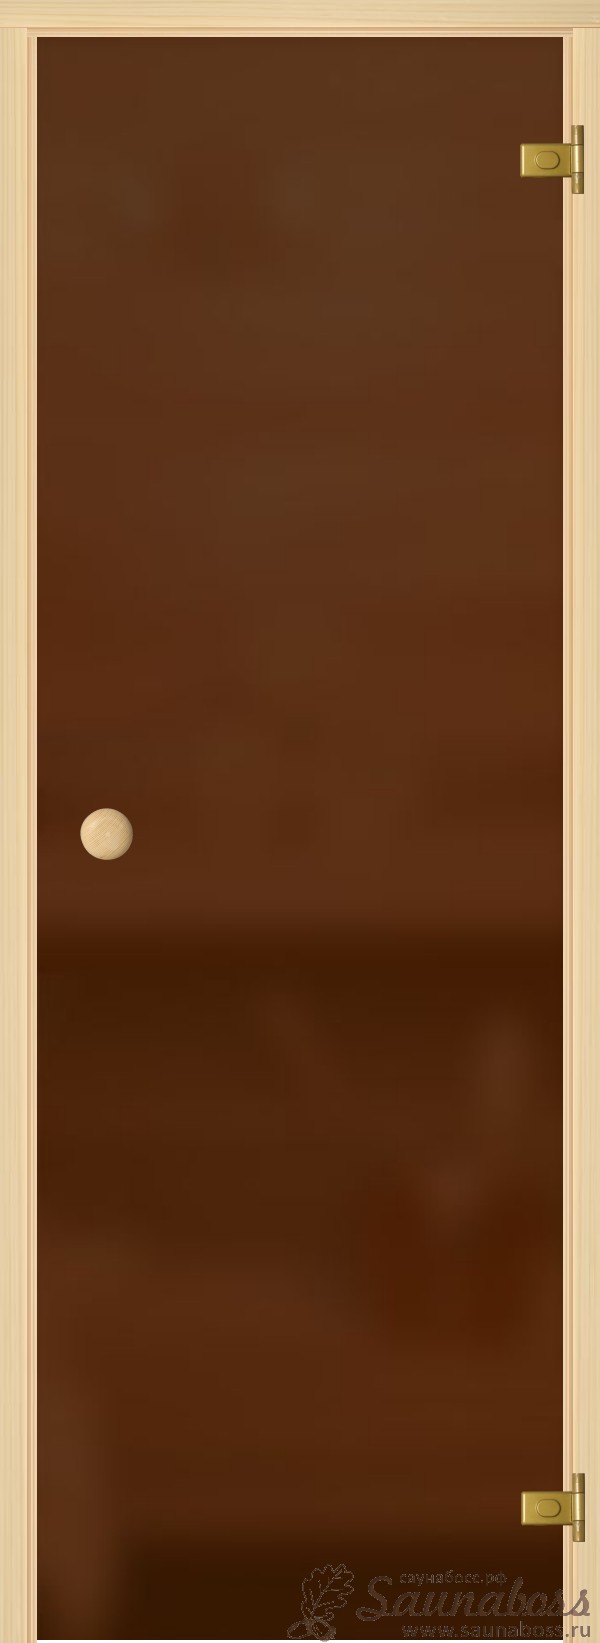 АКМА light Бронза мат. кноб осина 690*1890, 221А, фото